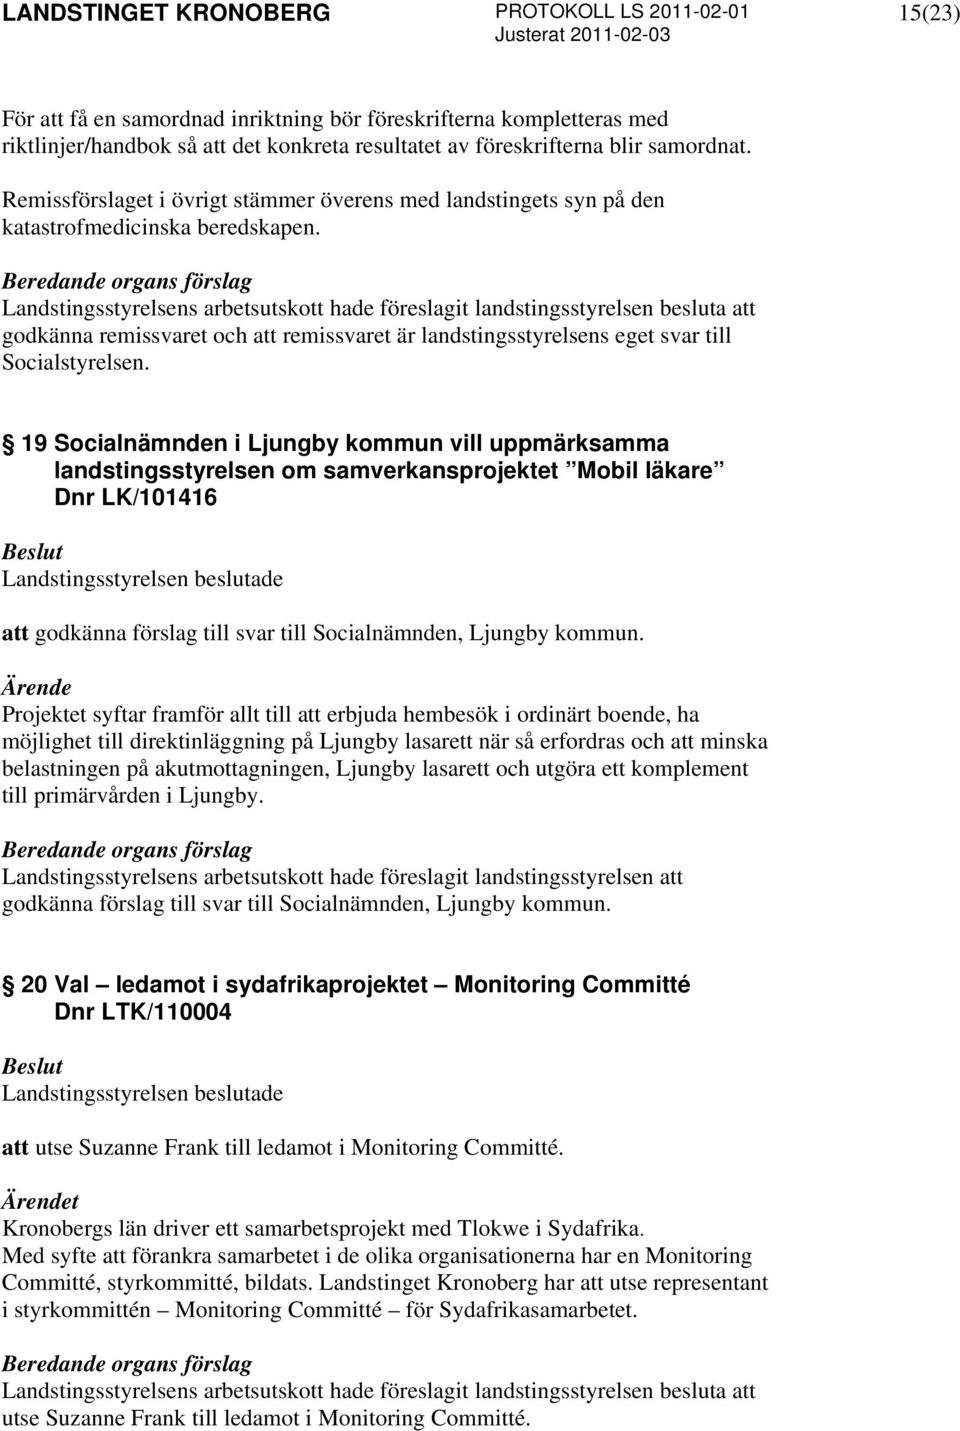 19 Socialnämnden i Ljungby kommun vill uppmärksamma landstingsstyrelsen om samverkansprojektet Mobil läkare Dnr LK/101416 att godkänna förslag till svar till Socialnämnden, Ljungby kommun.